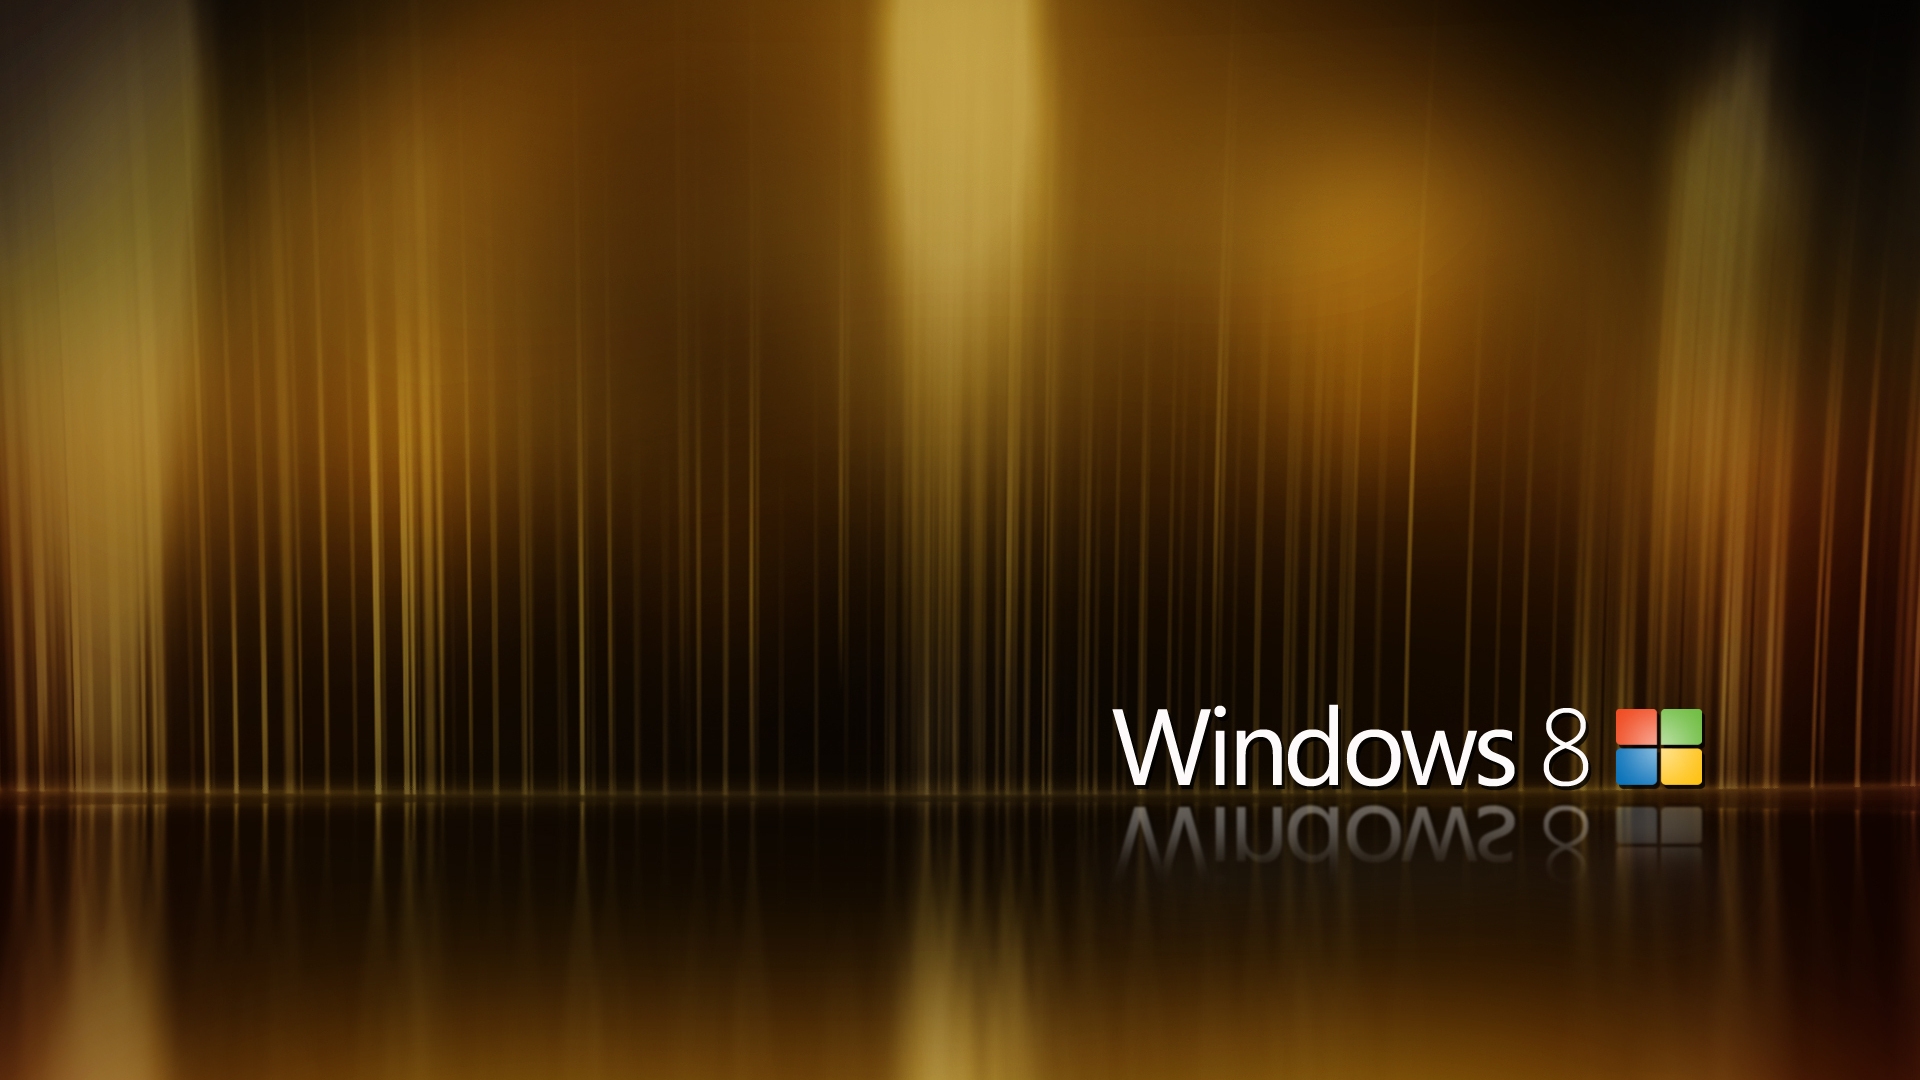 Những hình nền Windows 8.1 độ phân giải cao này sẽ thật sự làm mãn nhãn bạn với chất lượng hình ảnh tuyệt đỉnh và độ sắc nét ấn tượng. Hãy cùng hòa mình vào không gian màn hình desktop với những hình nền đẹp nhất và tạo ra sự mới mẻ cho máy tính của bạn.